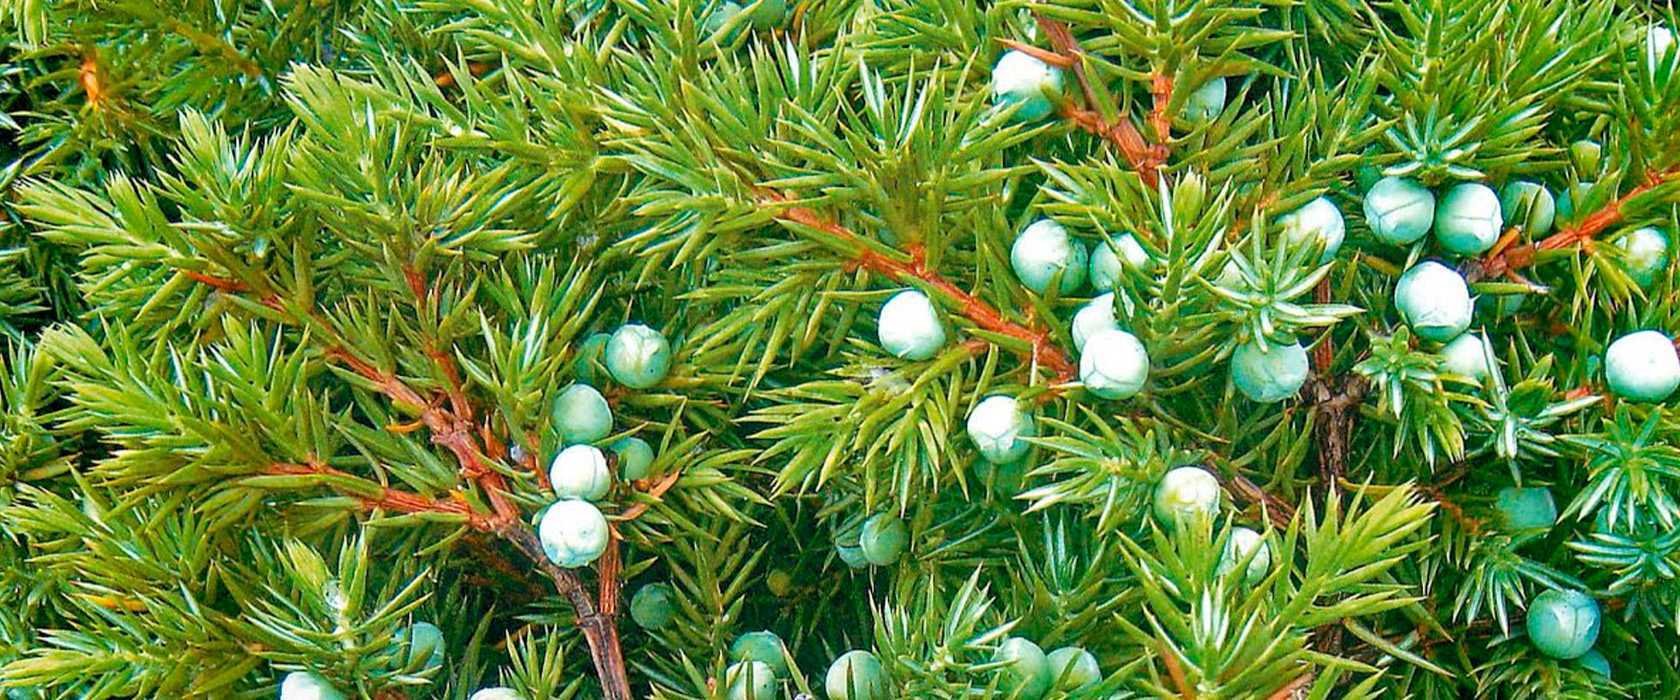 Можжевельник скальный (Juniperus scopulorum) является частью рода можжевельник, который относится к семейству кипарисовые В природе такое растение можно повстречать в Канаде